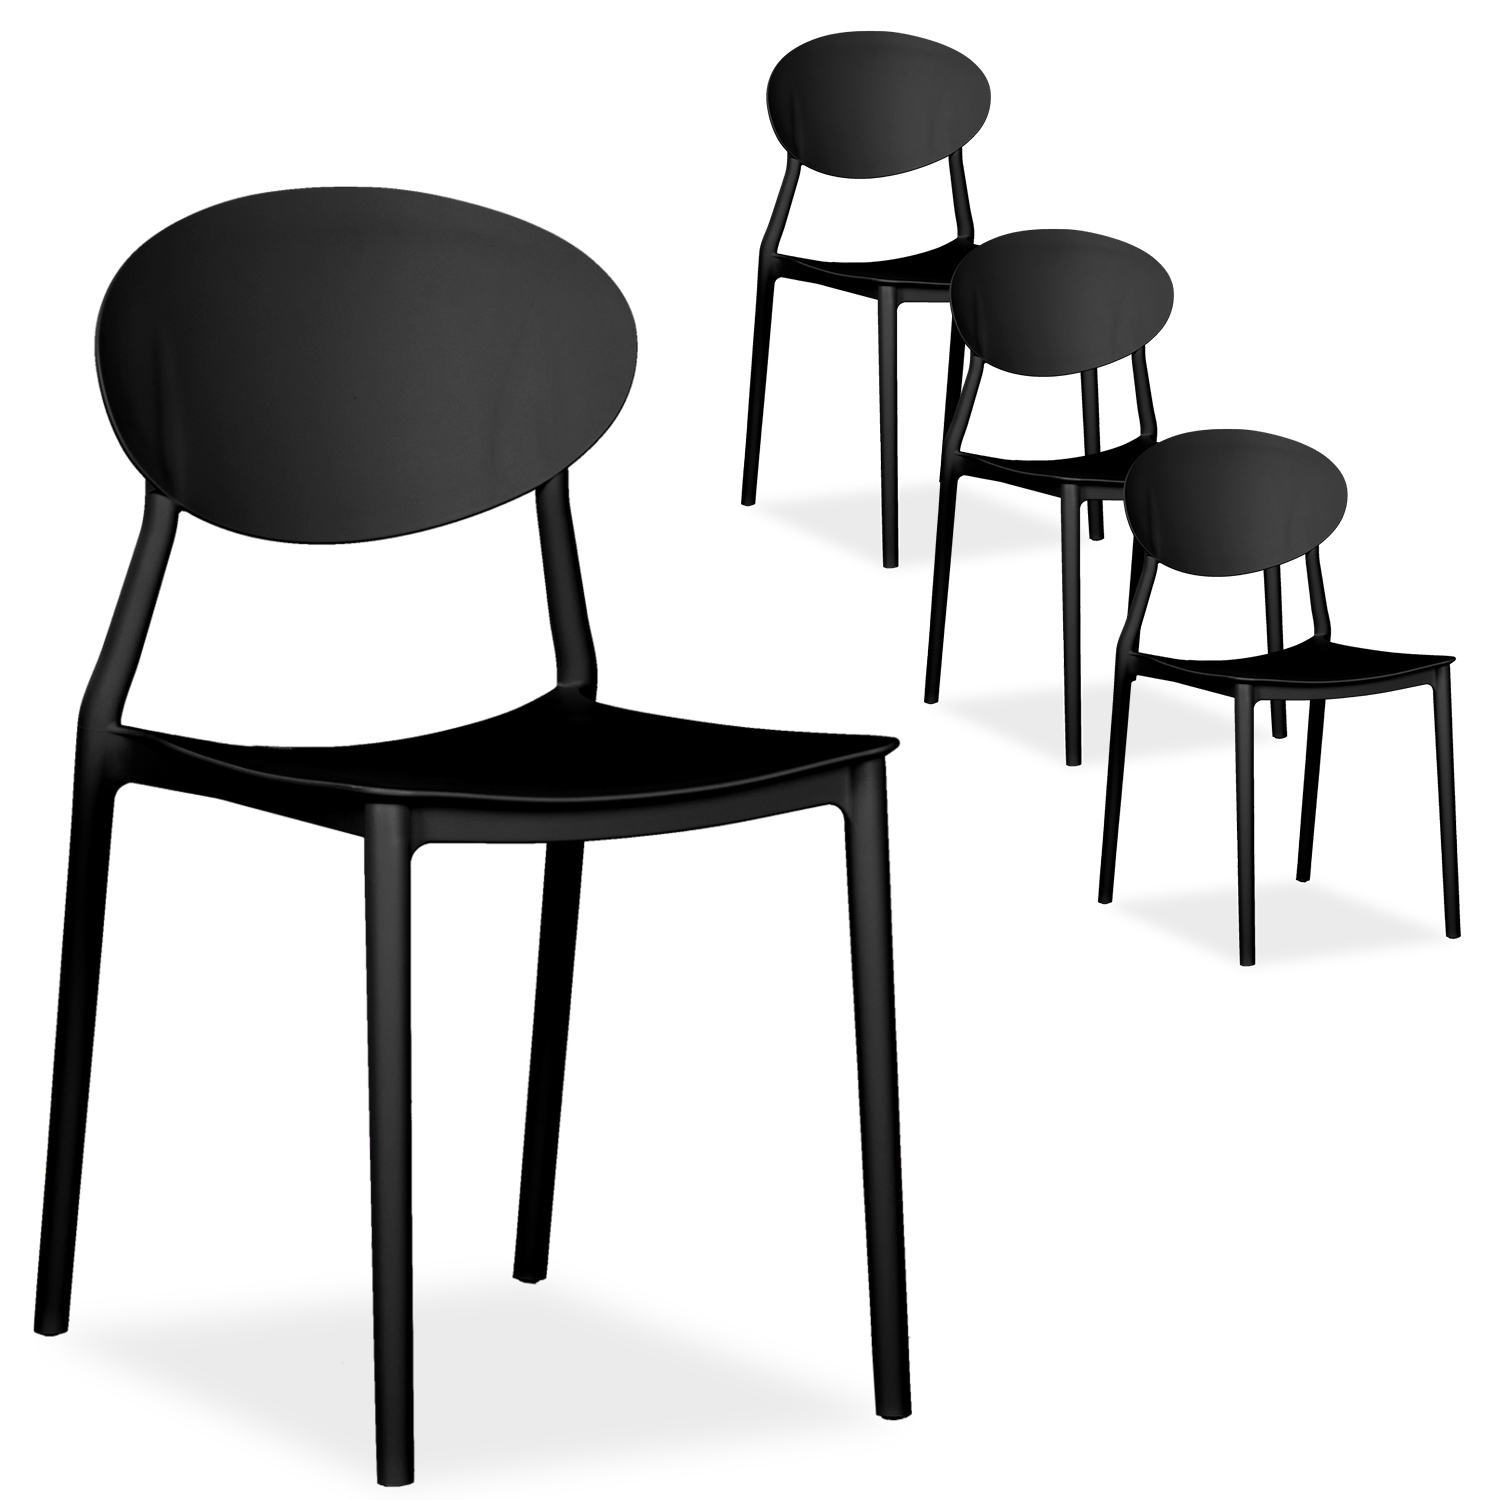 Chaise de jardin Lot de 4 Chaises design moderne Couleurs Différents Plastique Chaises exterieur Chaises empilable Chaise de cuisine